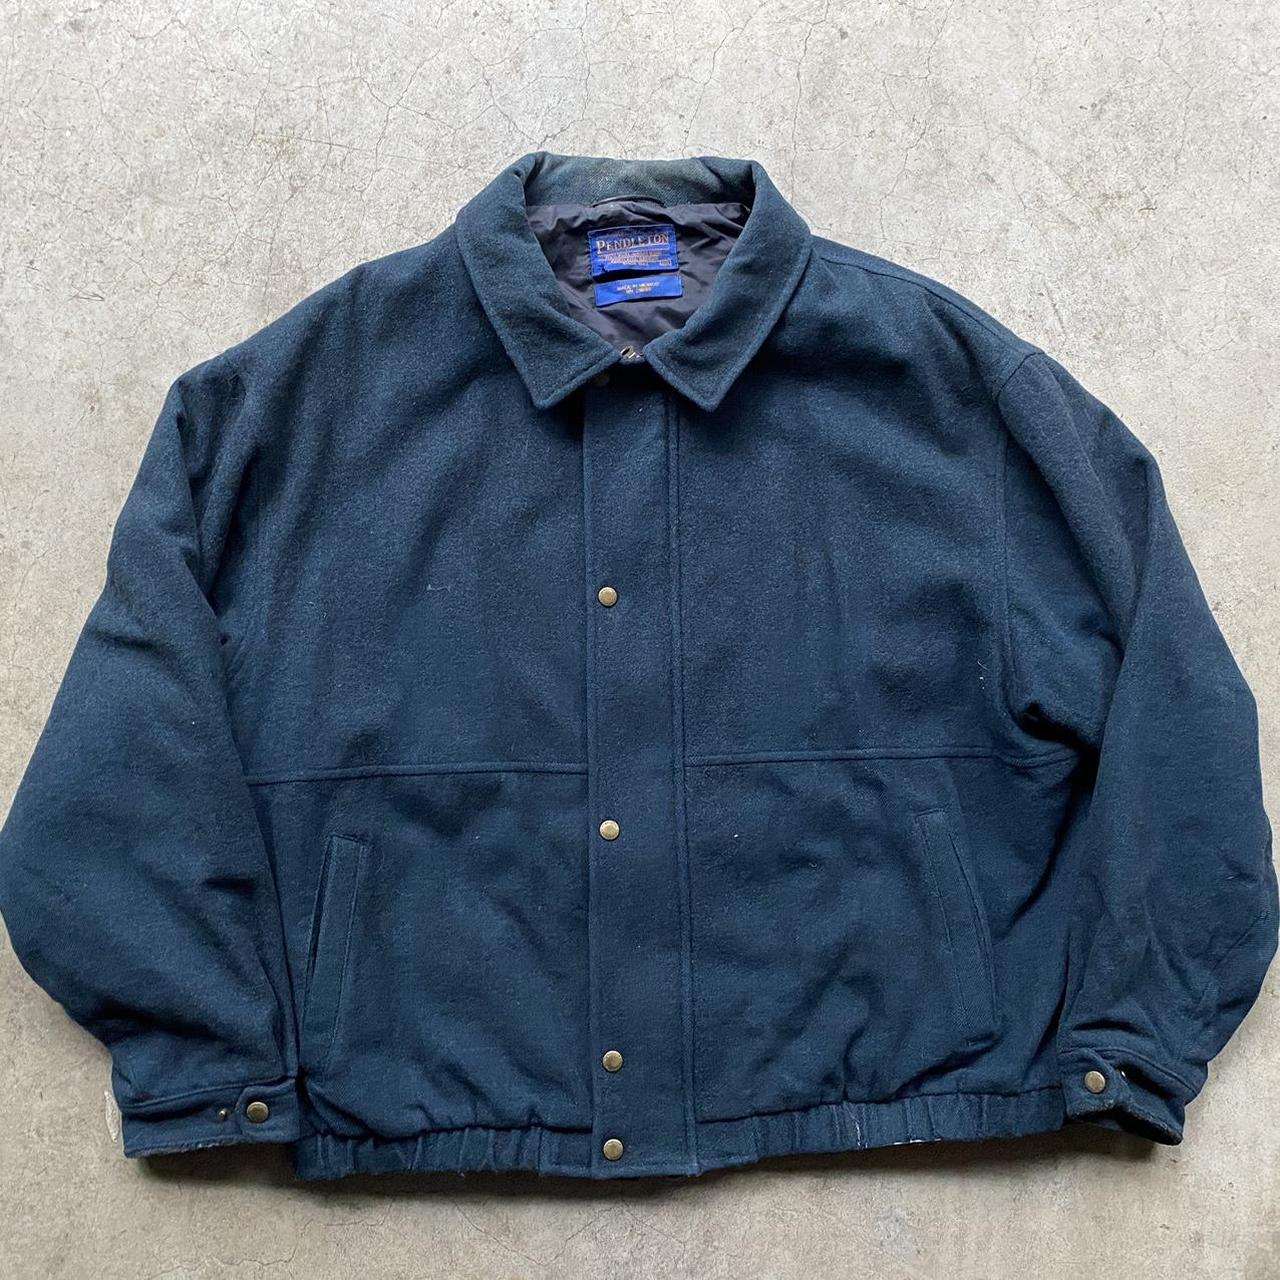 Pendleton bomber jacket Size XXL Vintage wool... - Depop